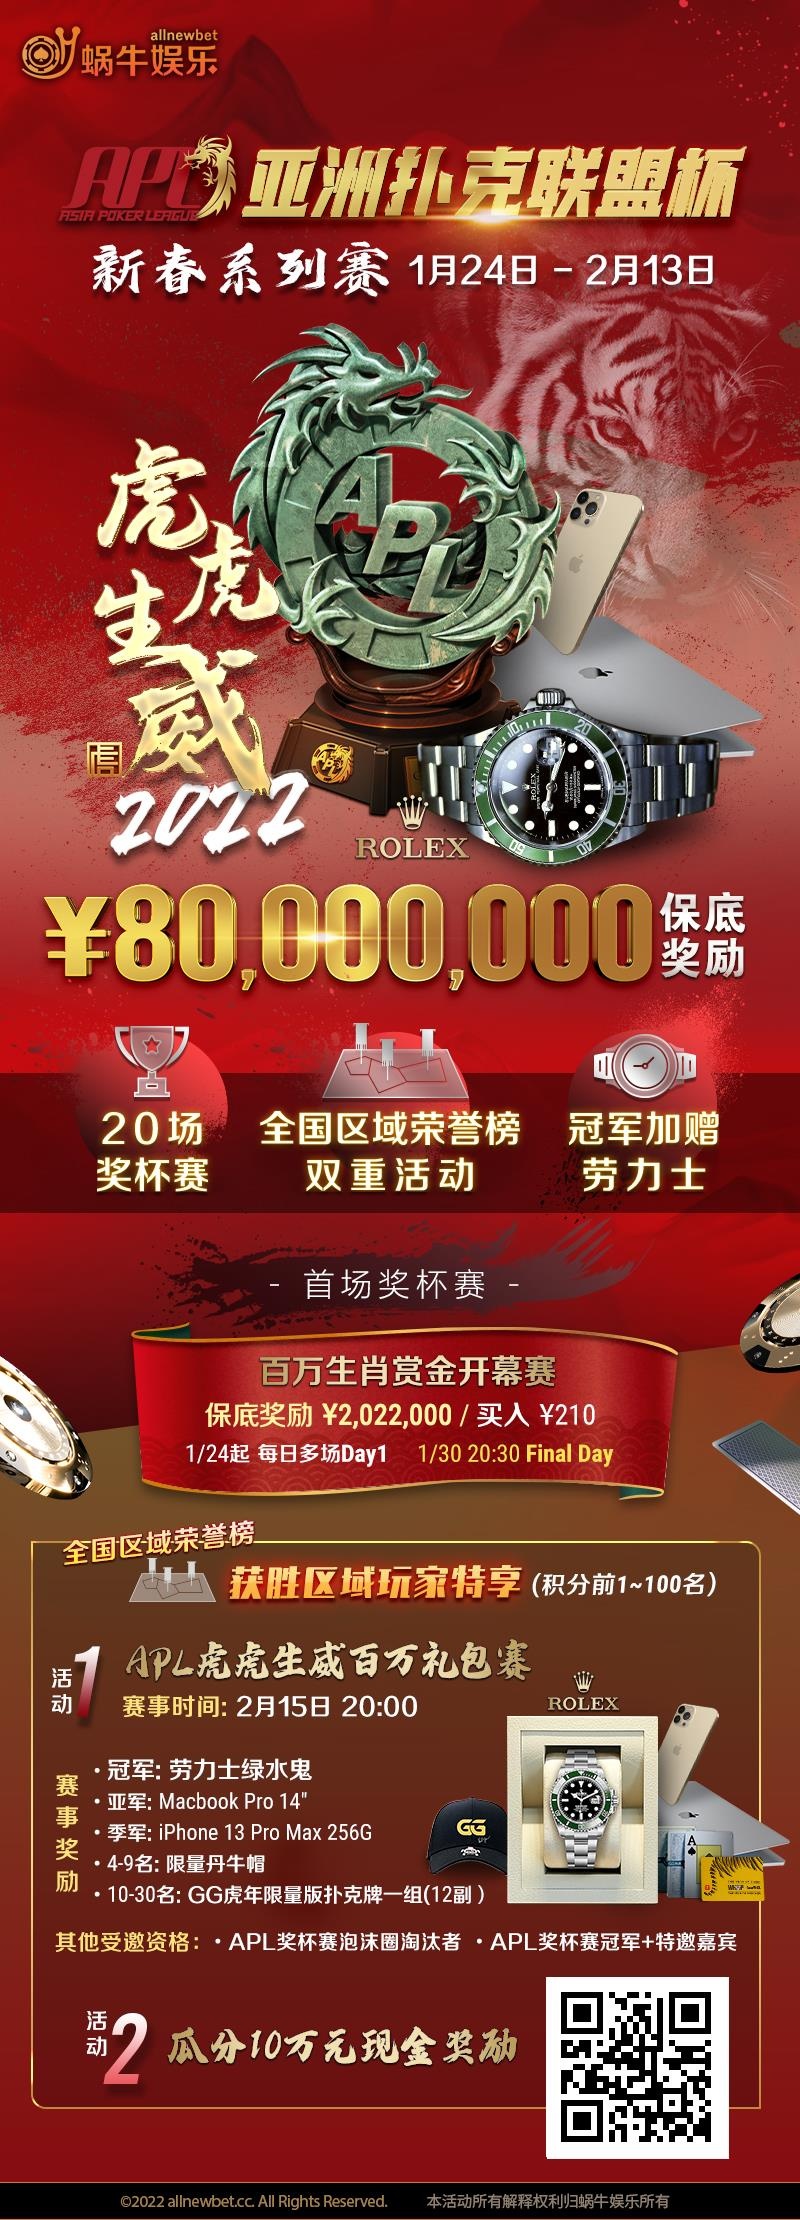 【蜗牛扑克】APL新春系列赛 1月23日 - 2月13日 ¥80,000,000保底奖励